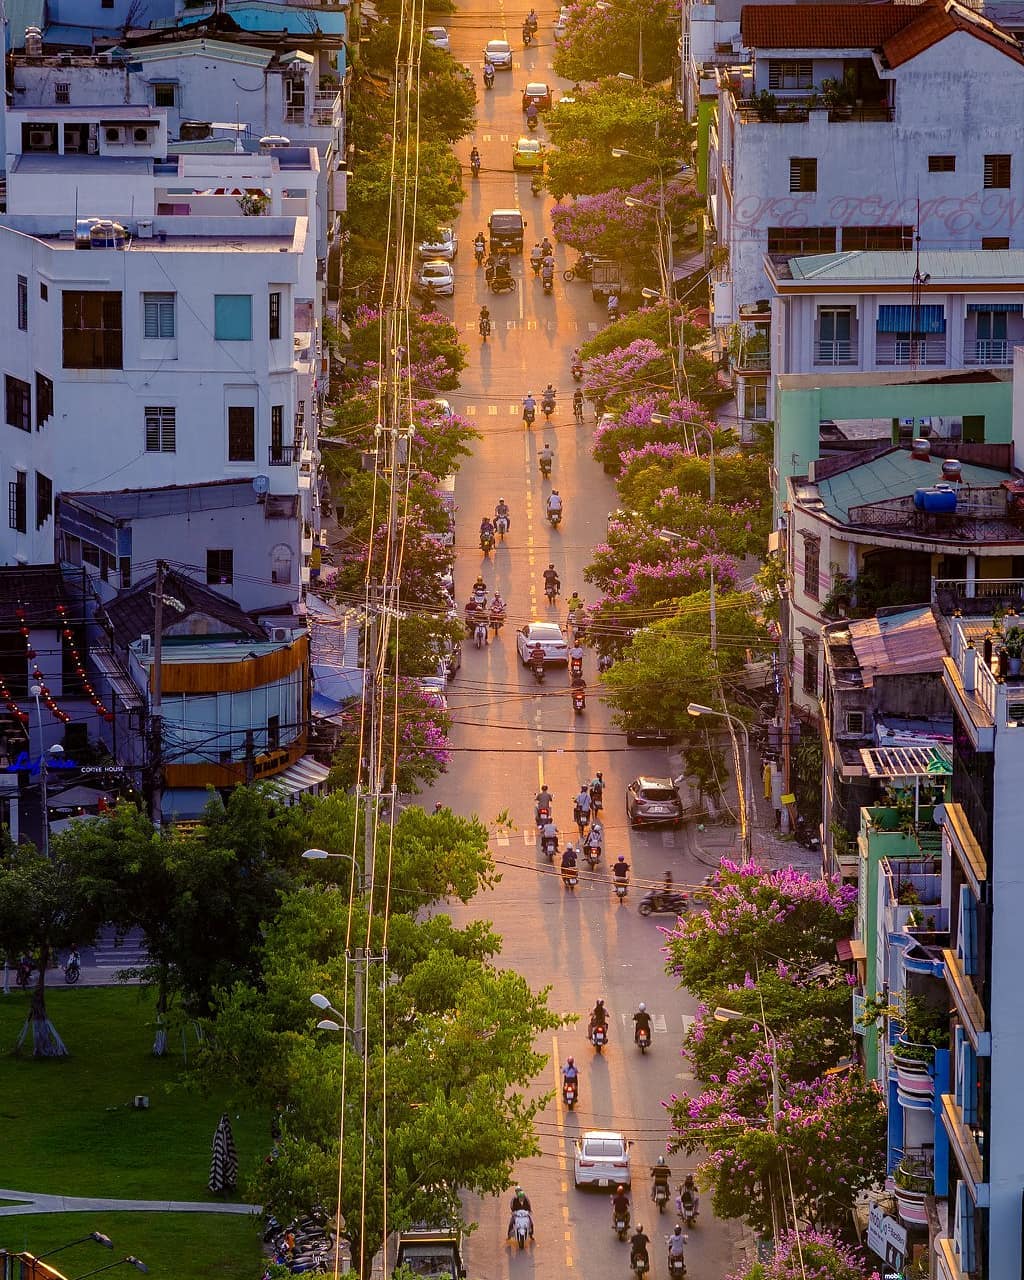 Đà Nẵng: Với những bãi biển tuyệt đẹp, cảnh quan hoang sơ, môi trường trong lành, Đà Nẵng là một điểm đến hấp dẫn của miền Trung Việt Nam. Khám phá những điểm đến nổi tiếng nhất của thành phố xinh đẹp này và thưởng thức ẩm thực đường phố tuyệt ngon đến từng miếng.